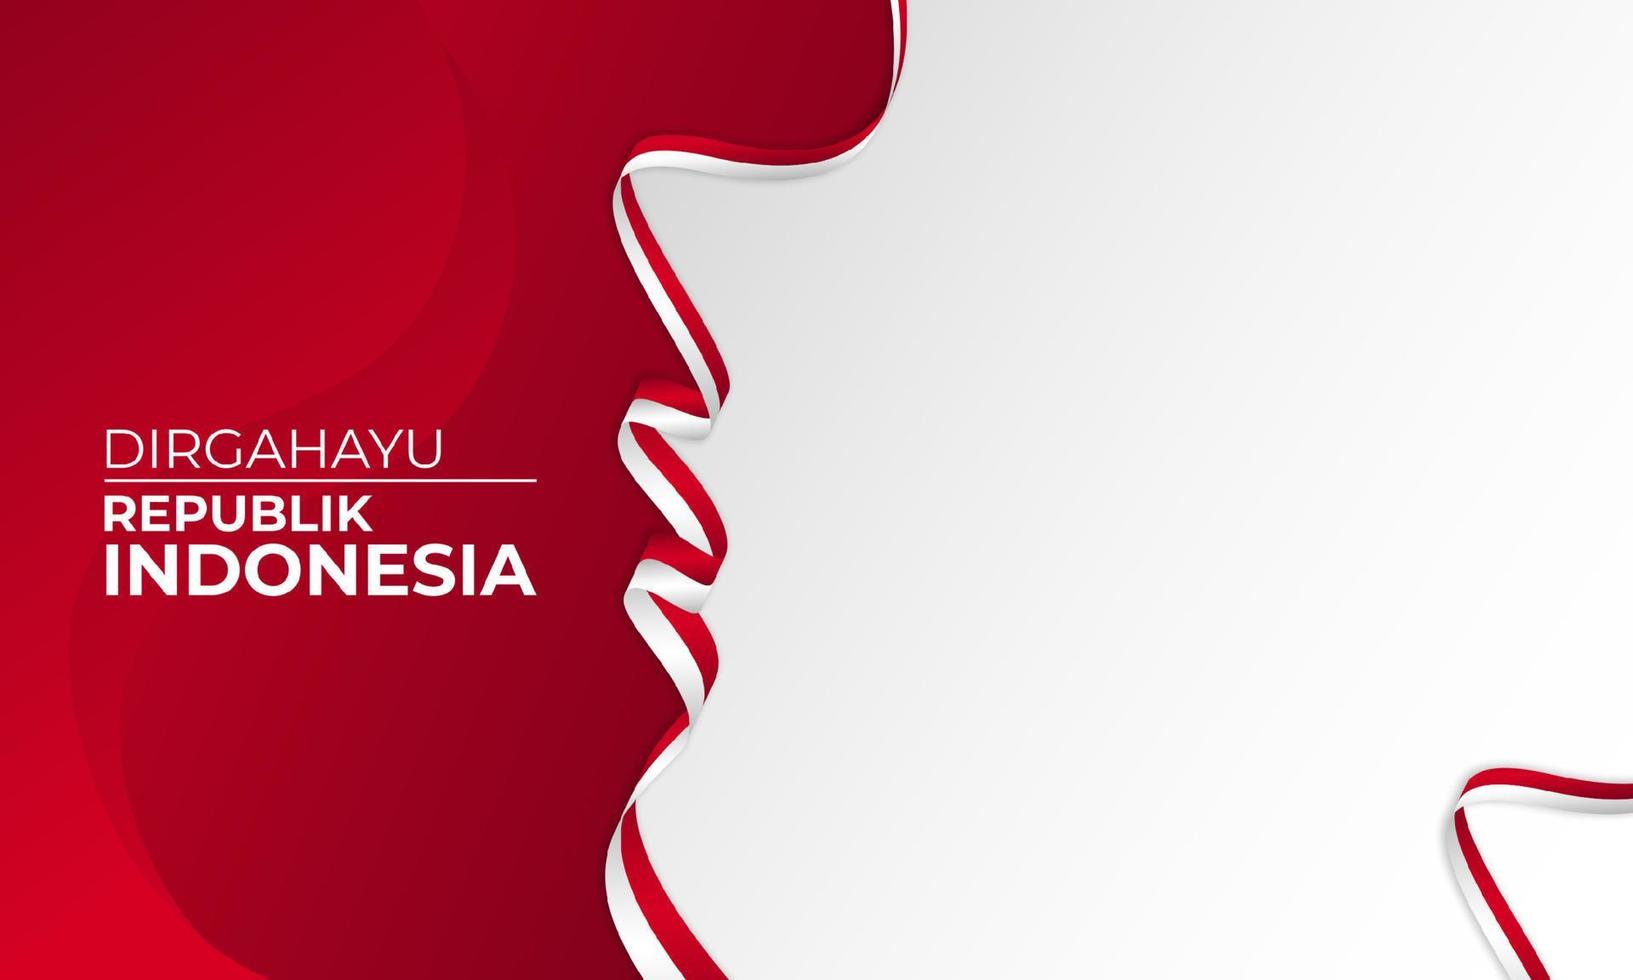 Happy Indonesien Unabhängigkeitstag Hintergrund Banner Design. vektor